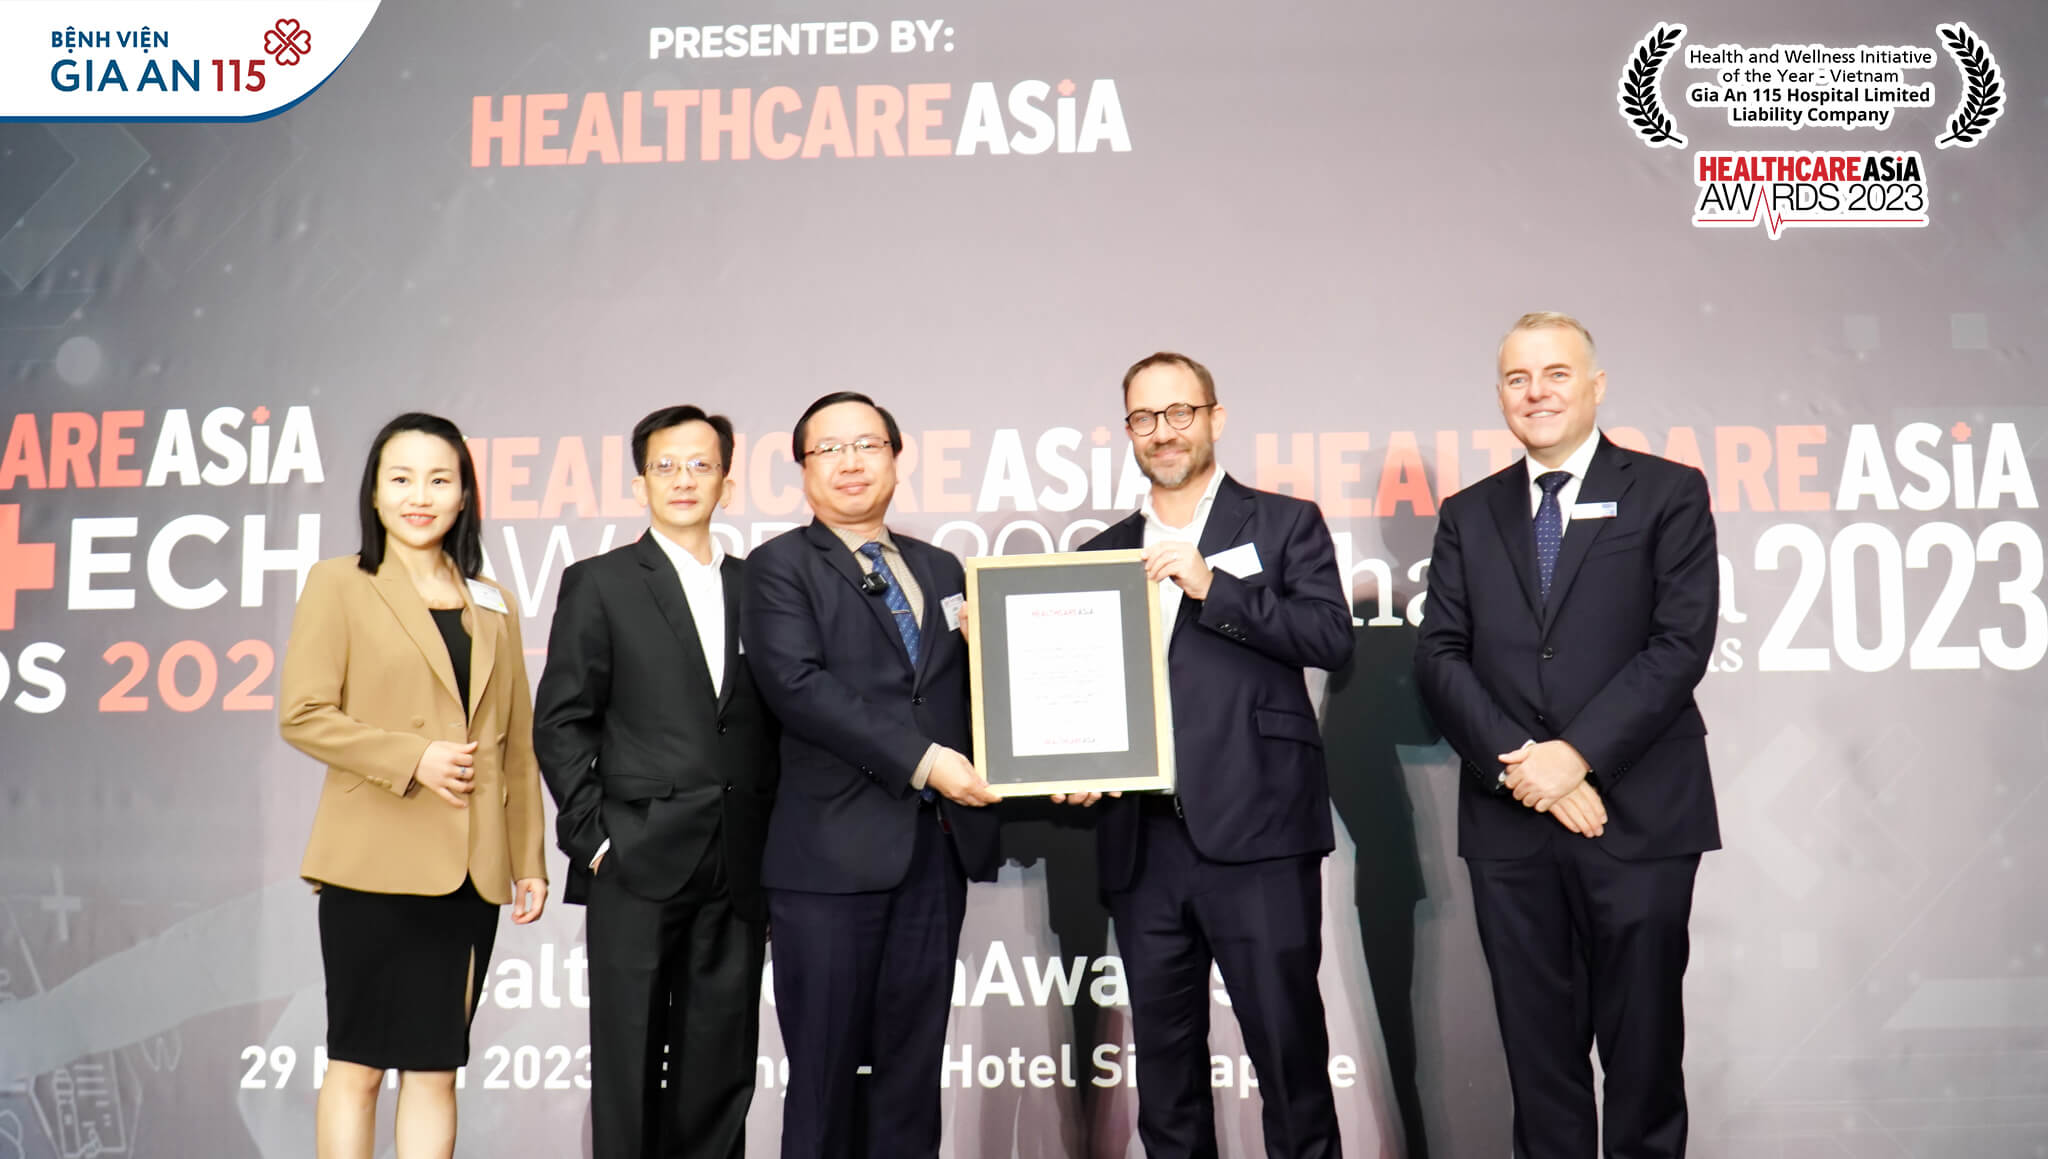 TS BS Trương Vĩnh Long - Đại diện Bệnh viện Gia An 115 nhận giải thưởng tại Healthcare Asia Awards 2023